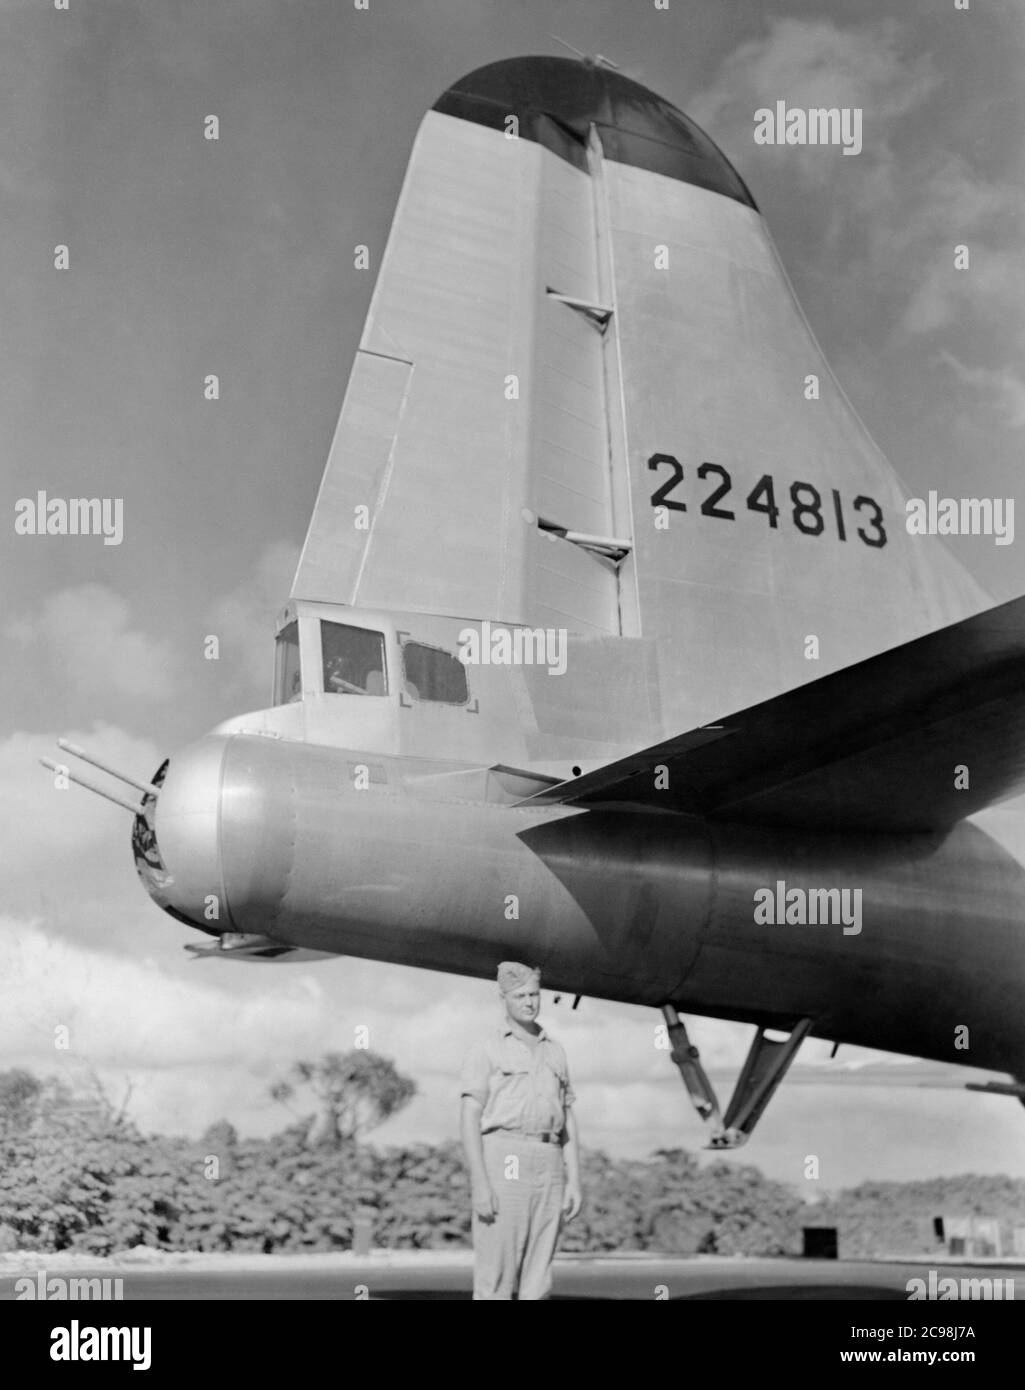 Boeing B-29 Superfortress 224813 sulla linea di volo. Northfield, Guam, luglio 1945. Con l'avvicinarsi del 75° anniversario del V-J Day, la Consoli Collection ha pubblicato quattro saggi fotografici di U.S. Navy Lt. (j.g.) Giuseppe J. Consoli. Le foto sono state scattate tra luglio e dicembre 1945 nelle Isole Marianne. Documentano la vita della Marina degli Stati Uniti prima e dopo la resa giapponese. Foto Stock